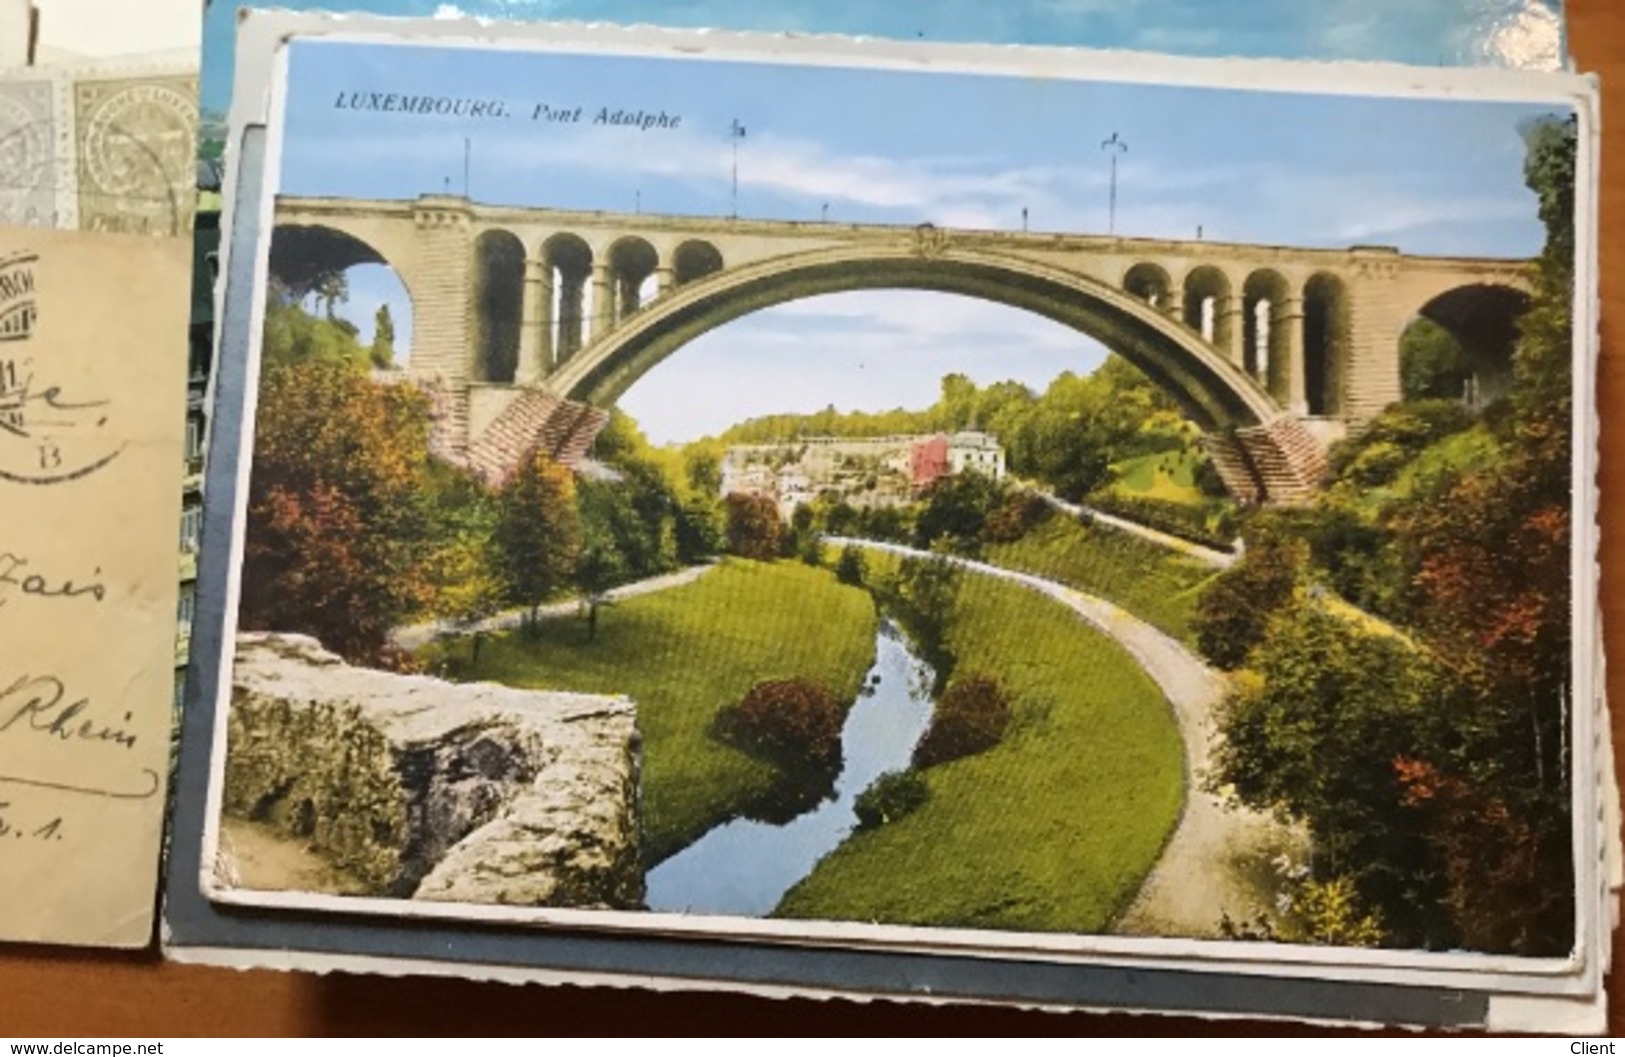 LUXEMBOURG - 100 Cartes Postales Ville de Luxembourg années divers